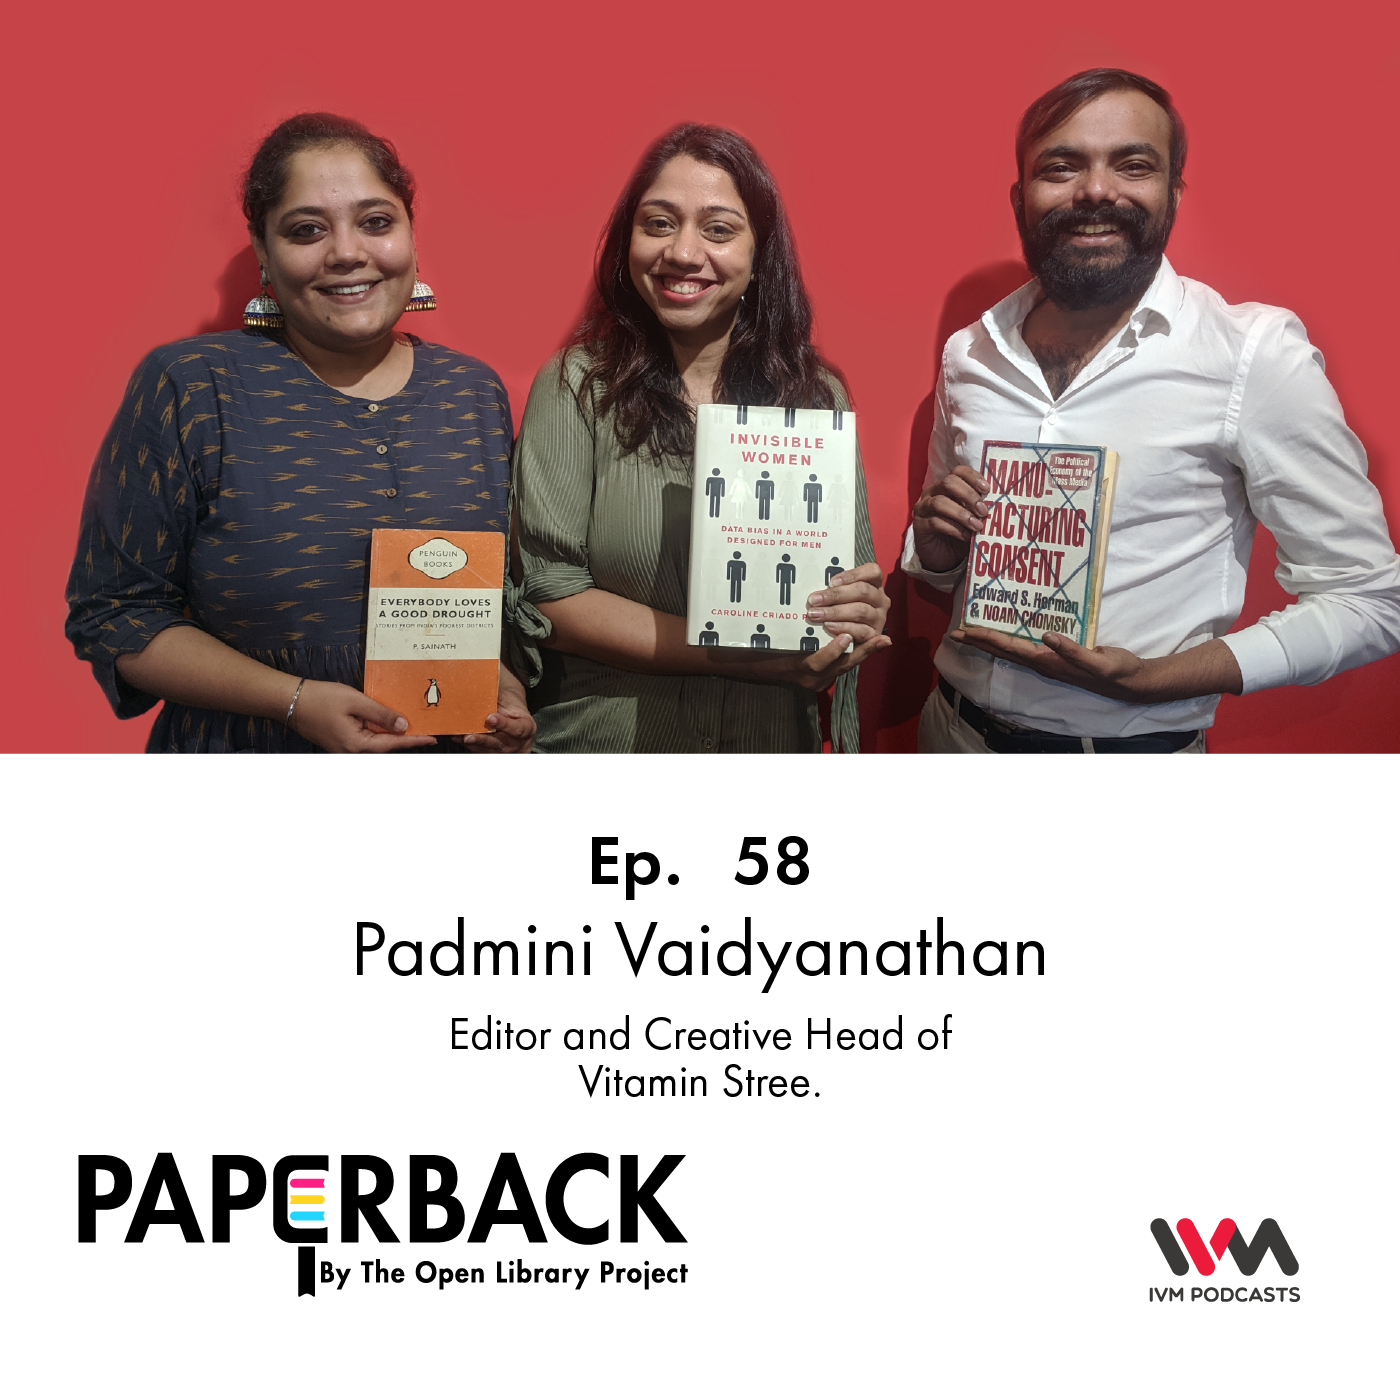 Ep. 58: Padmini Vaidyanathan